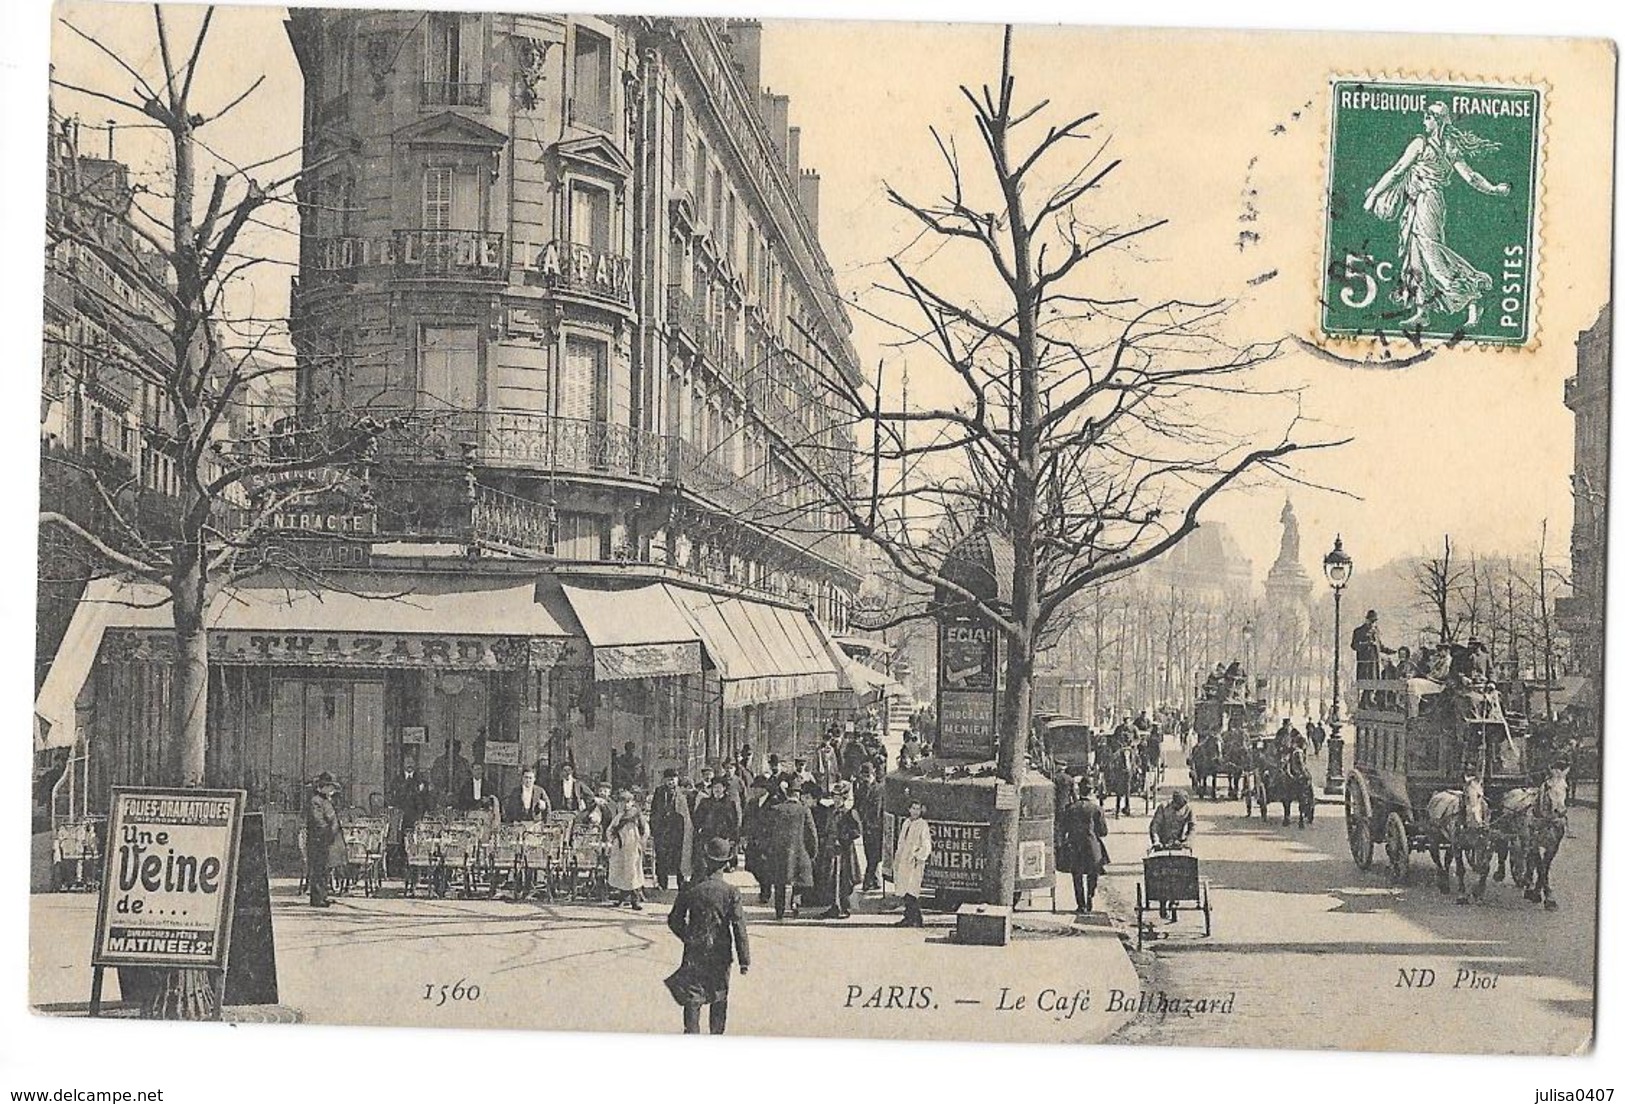 PARIS (75) Café Balthazard Boulevard Belle Animation - Pubs, Hotels, Restaurants